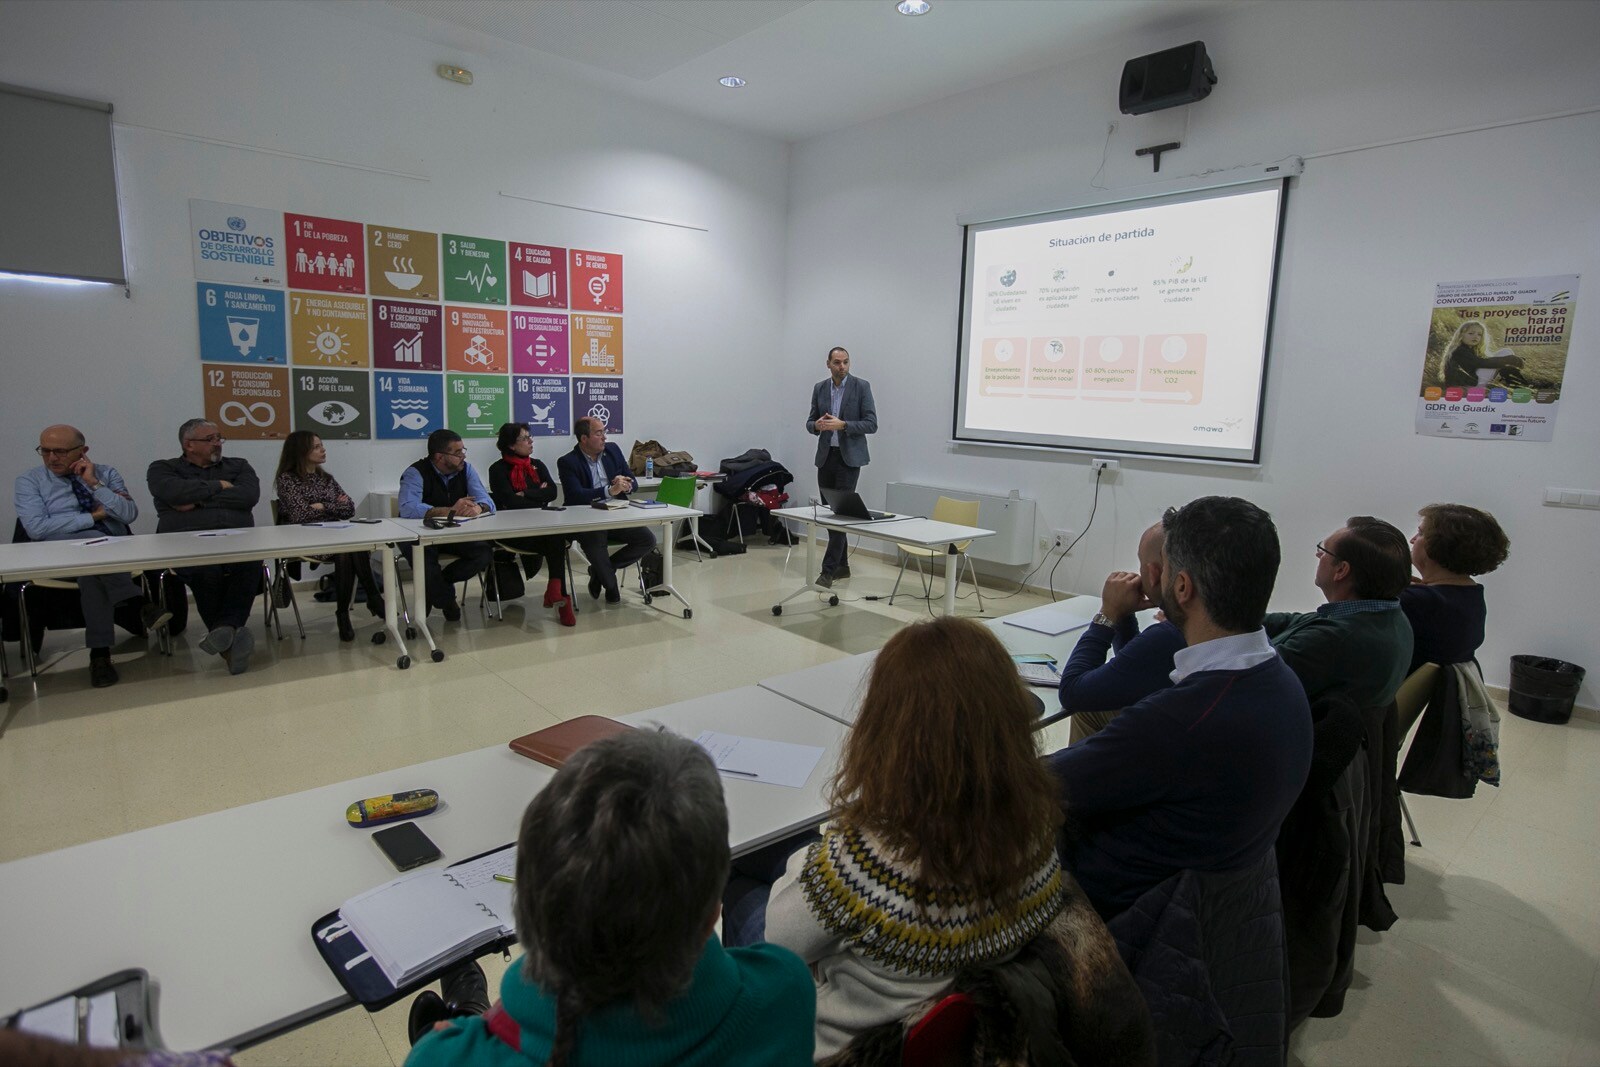 La jornada ha reunido a un nutrido y participativo grupo de empresarios de la comarca de Guadix, que han planteado preguntas y escuchado con atención las claves sobre desarrollo sostenible y energías renovables